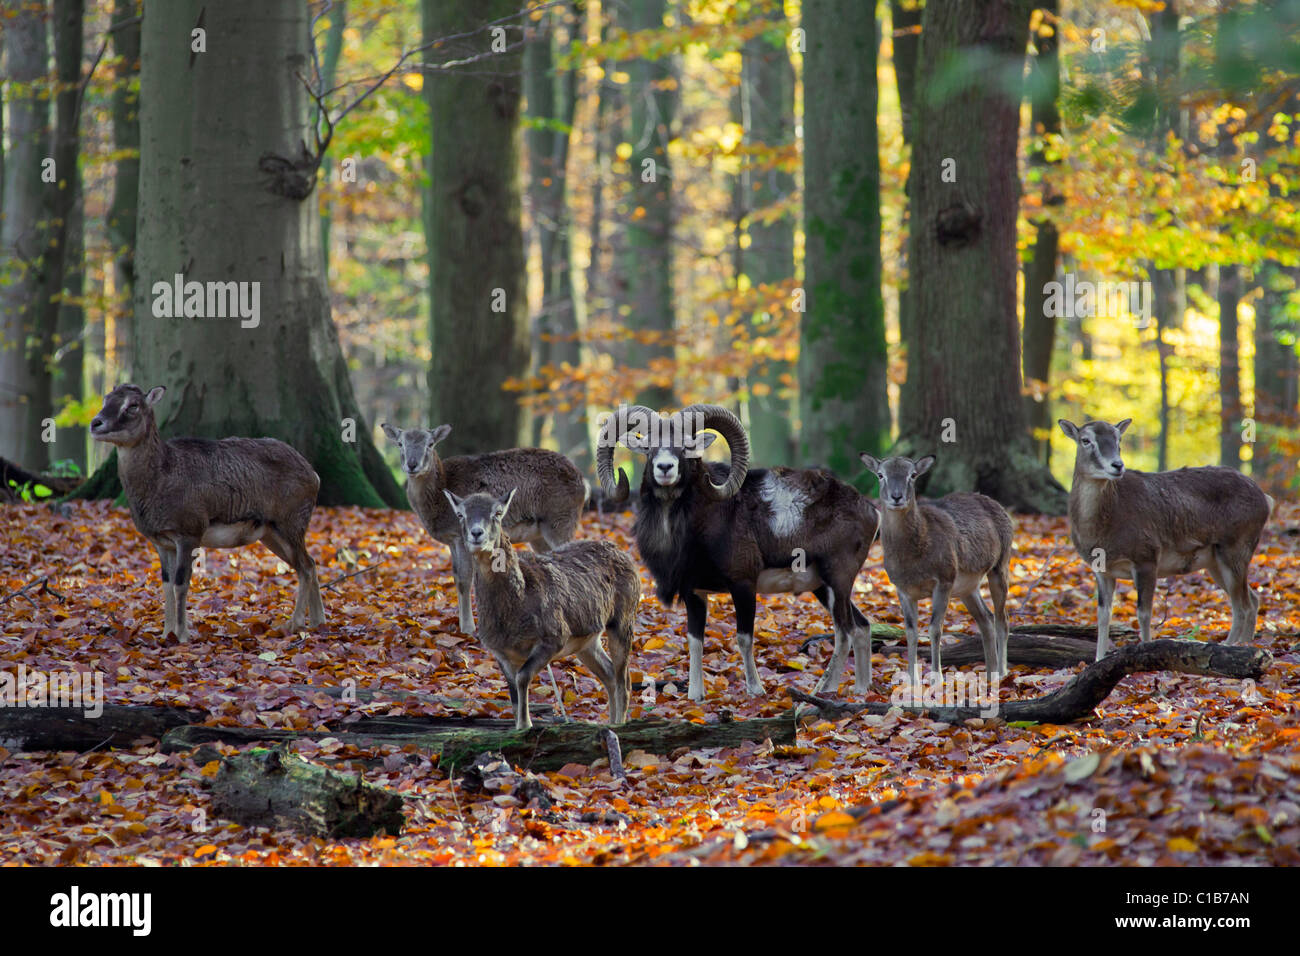 Mouflon (Ovis gmelini européenne / Ovis ammon musimon / Ovis orientalis musimon) ram avec troupeau en forêt en automne, Allemagne Banque D'Images